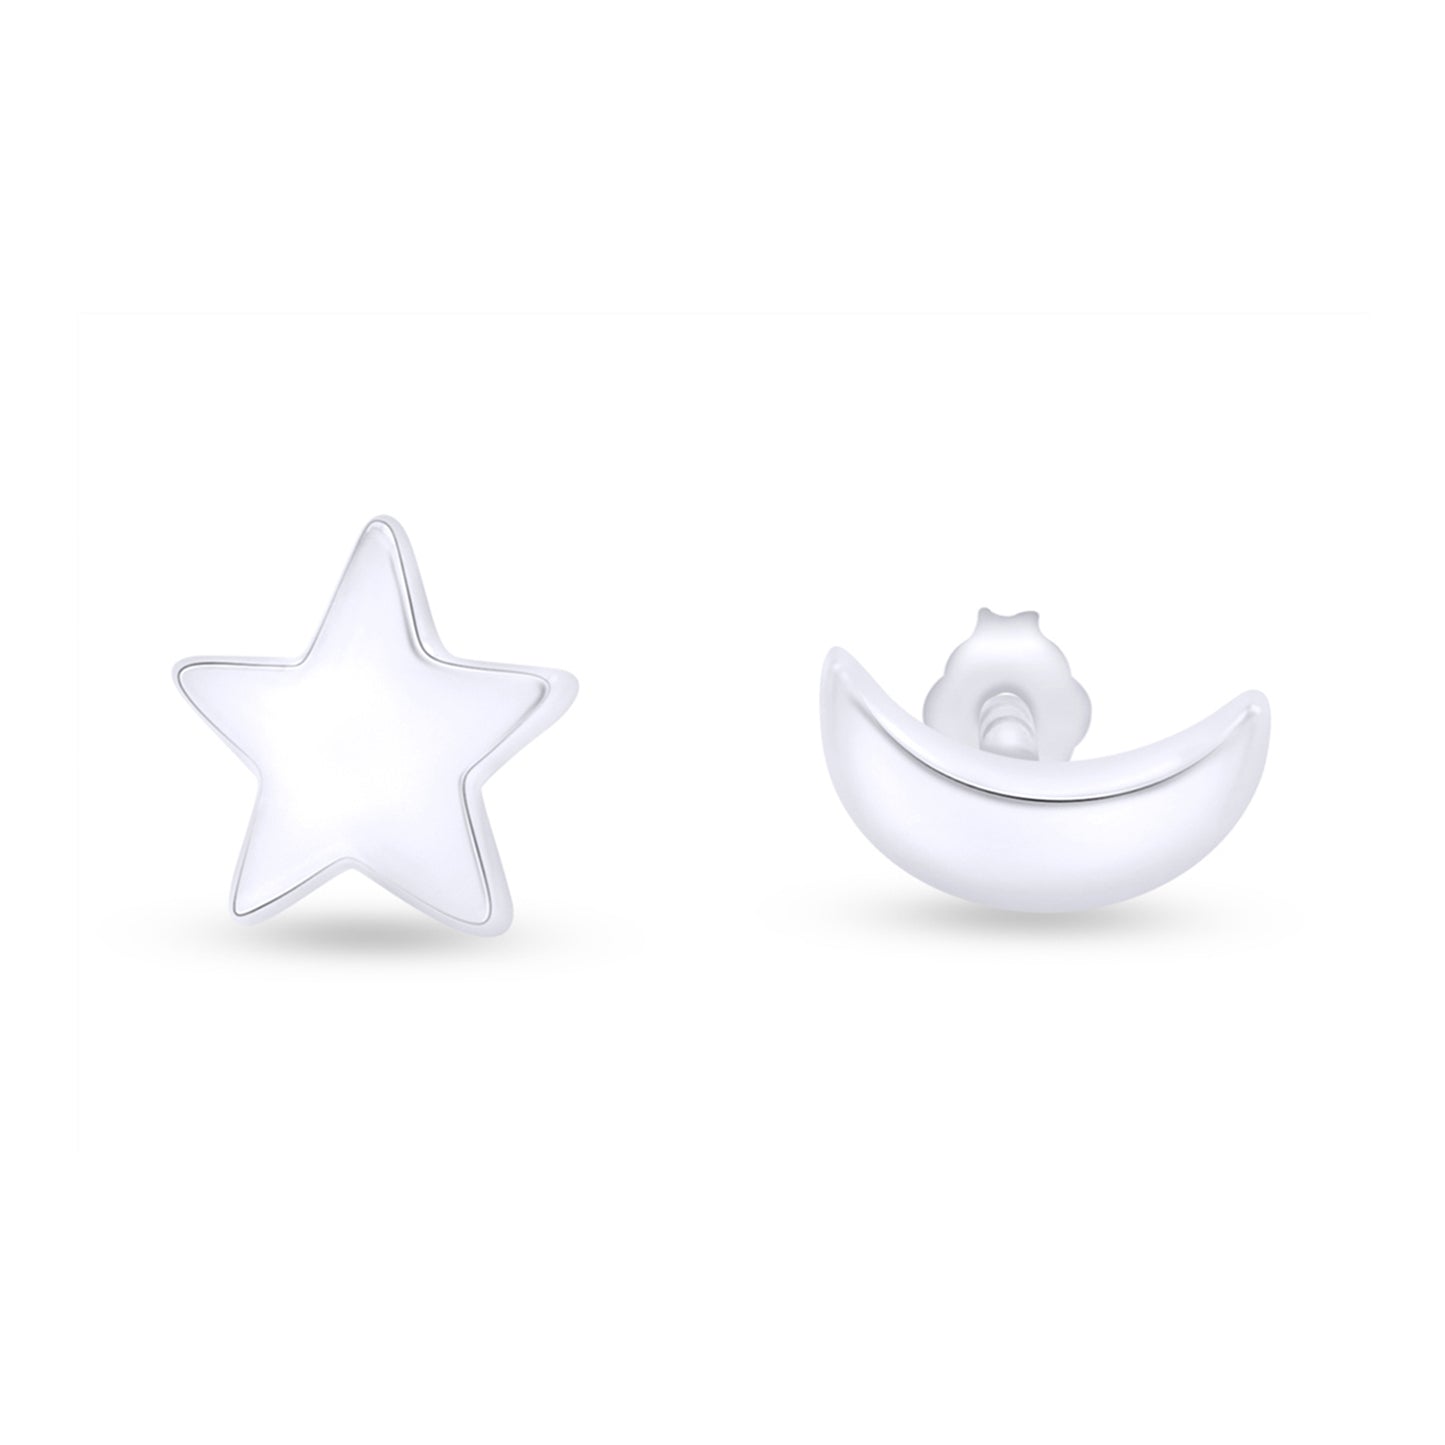 Asymmetry Symbol Moon Star Stud Earrings in 925 Sterling Silver Push Back Jewelry for Women